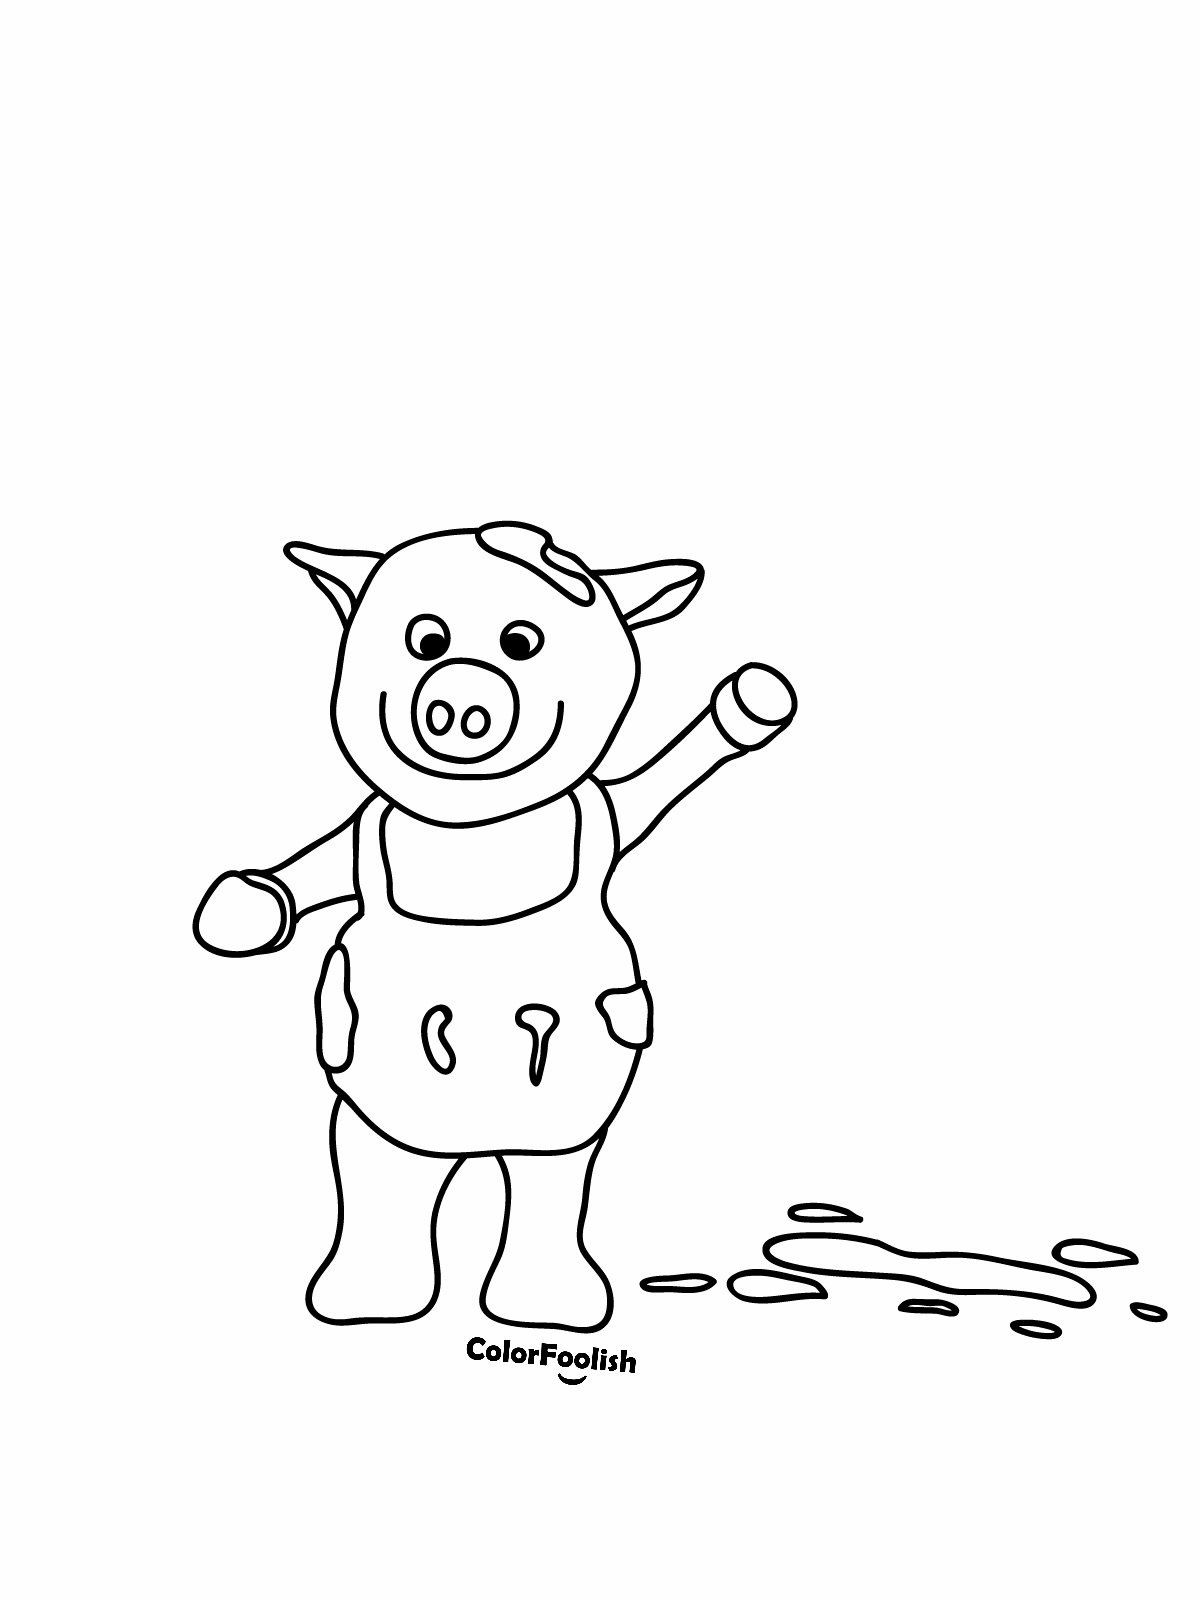 Dibujo para colorear de un cerdo saludando a nosotros